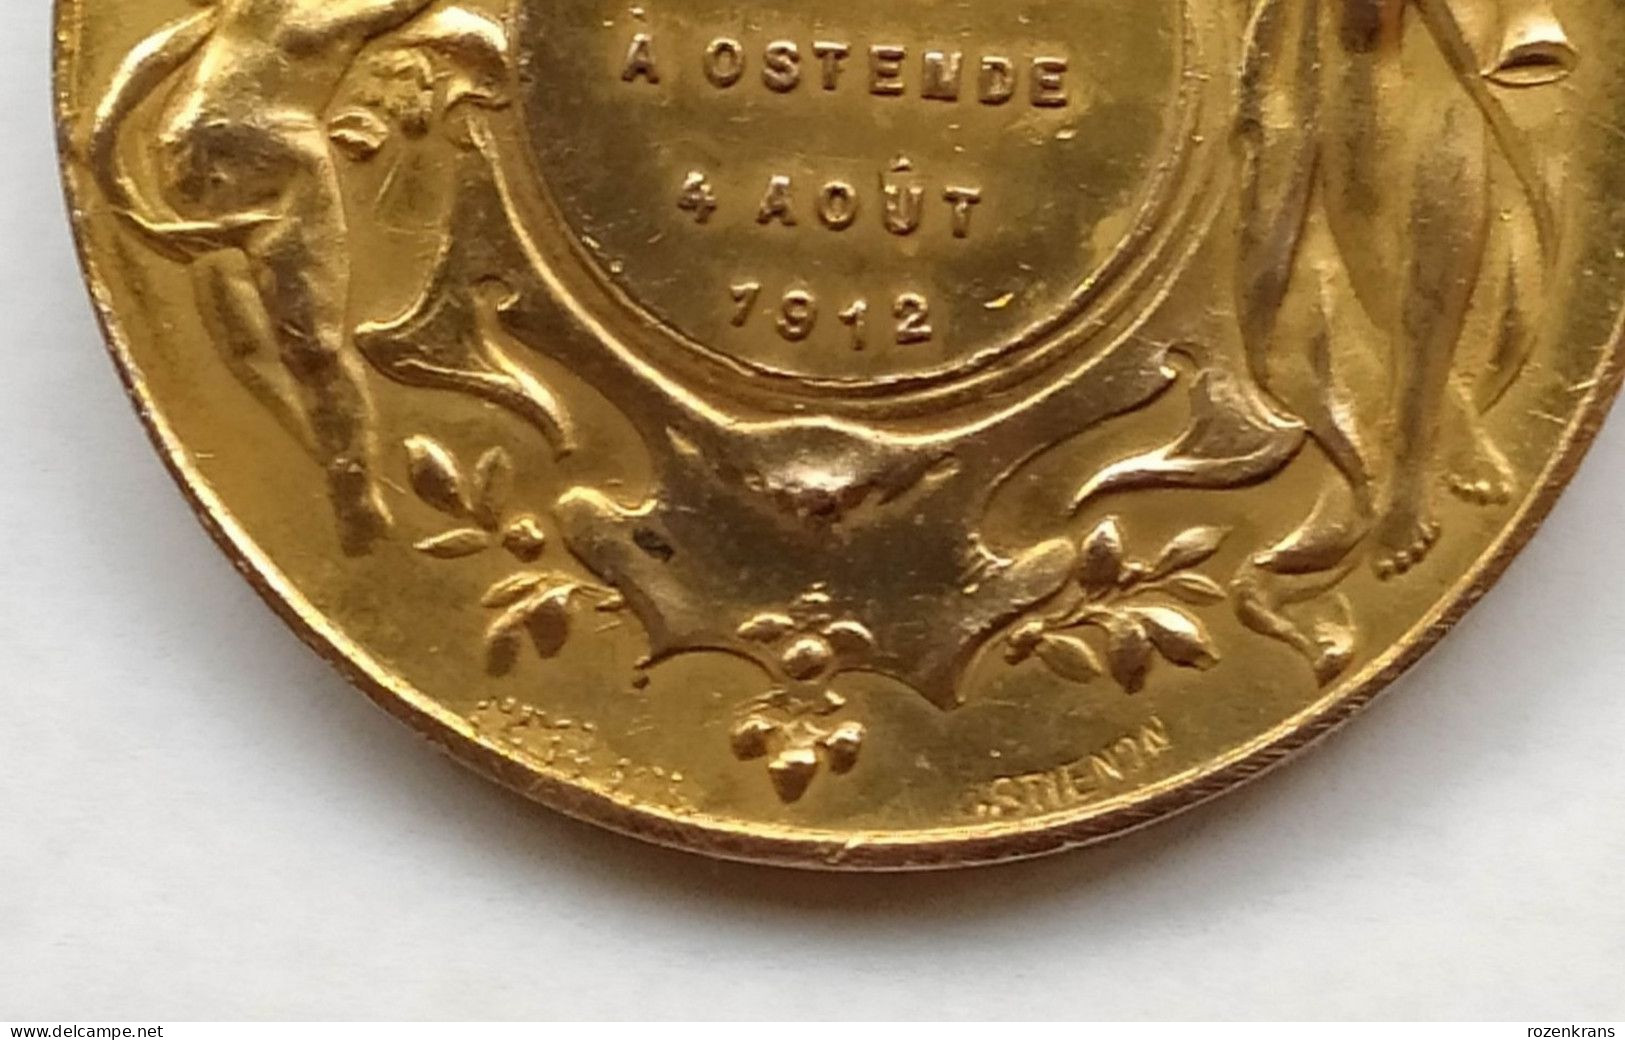 Oude Medaille Oostende Ostende La Royale Legia En Visite 4 Augustus 1912 Ancienne Old Medal Coin - Gemeentepenningen